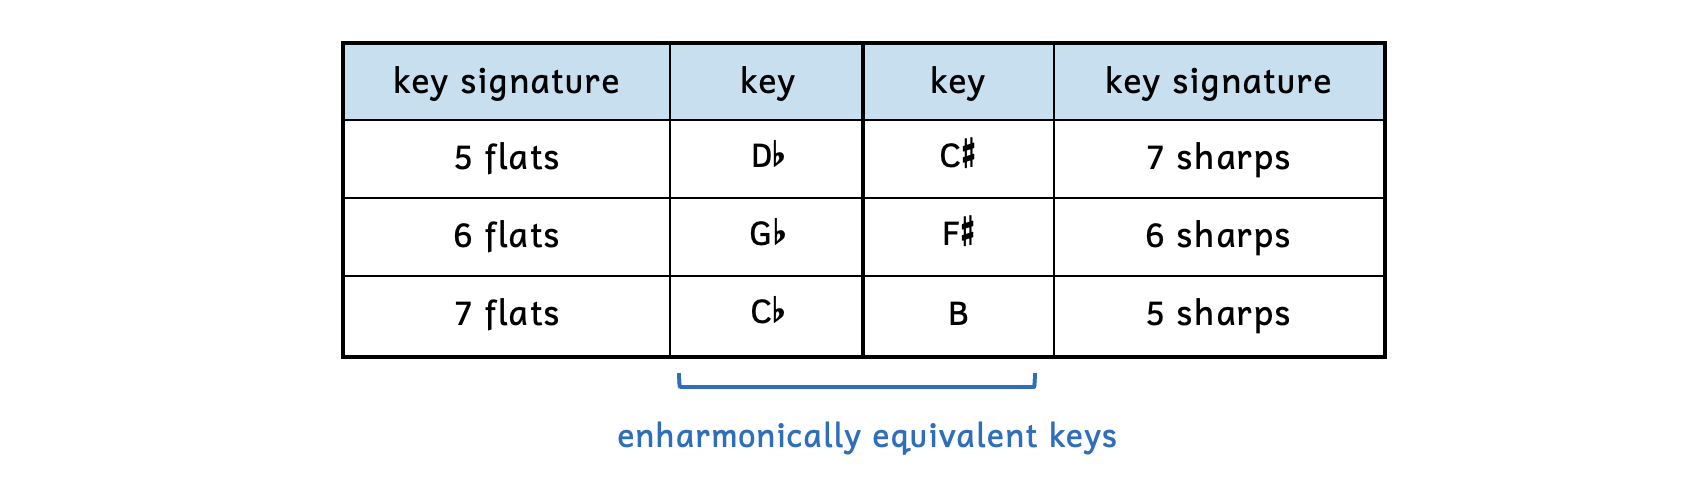 Table illustrating three enharmonically equivalent keys. D-flat major has 5 flats and C-sharp major has 7 sharps. G-flat major has 6 flats and F-sharp major has 6 sharps. C-flat major has 7 flats and B major has 5 sharps.